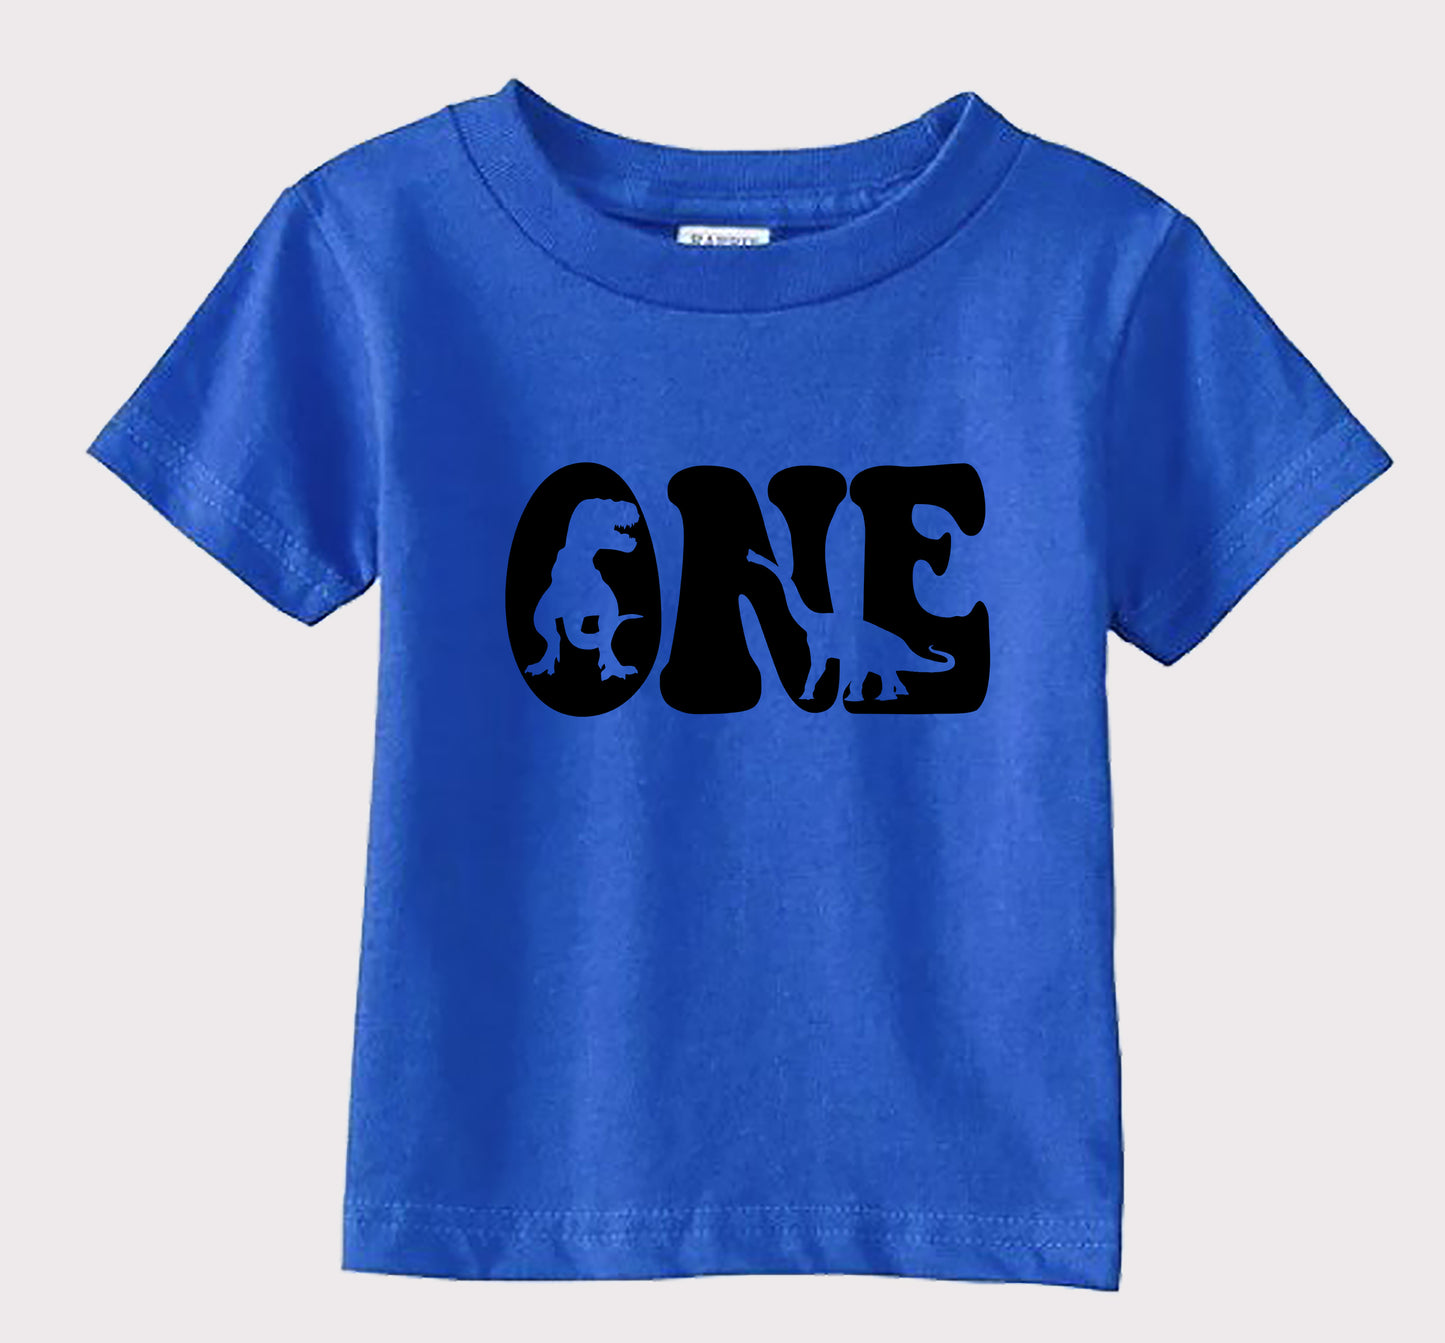 DINOSAUR BIRTHDAY shirt  - birthday shirt - Personalized boys  shirt -  Dinosaurs shirt - boys birthday shirts  - Boys shirts